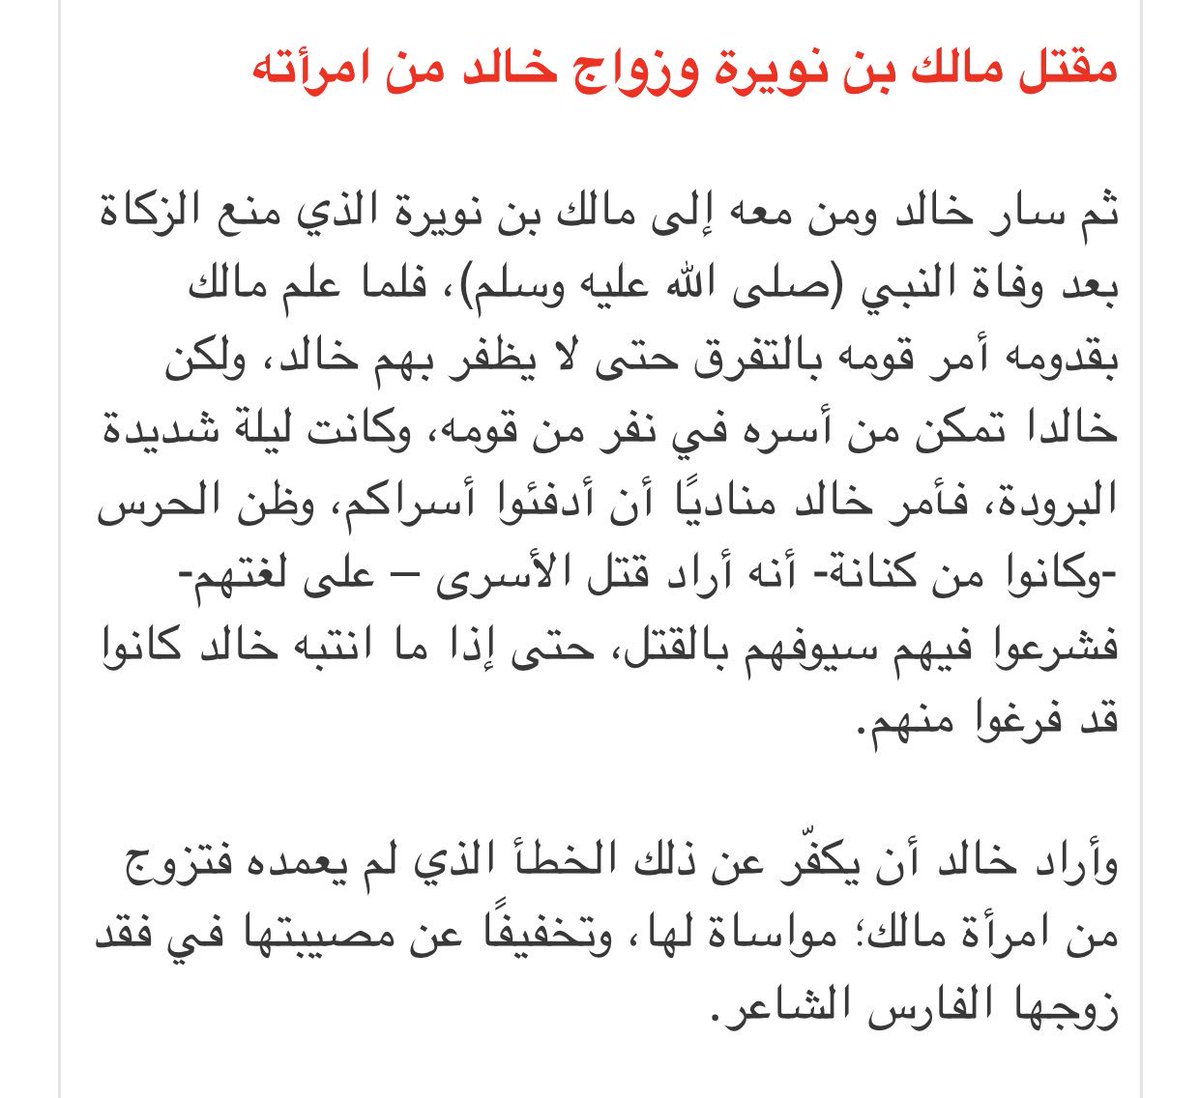 مكس En Twitter هذه قصة قتل مالك بن نويرة و زواج خالد ابن الوليد